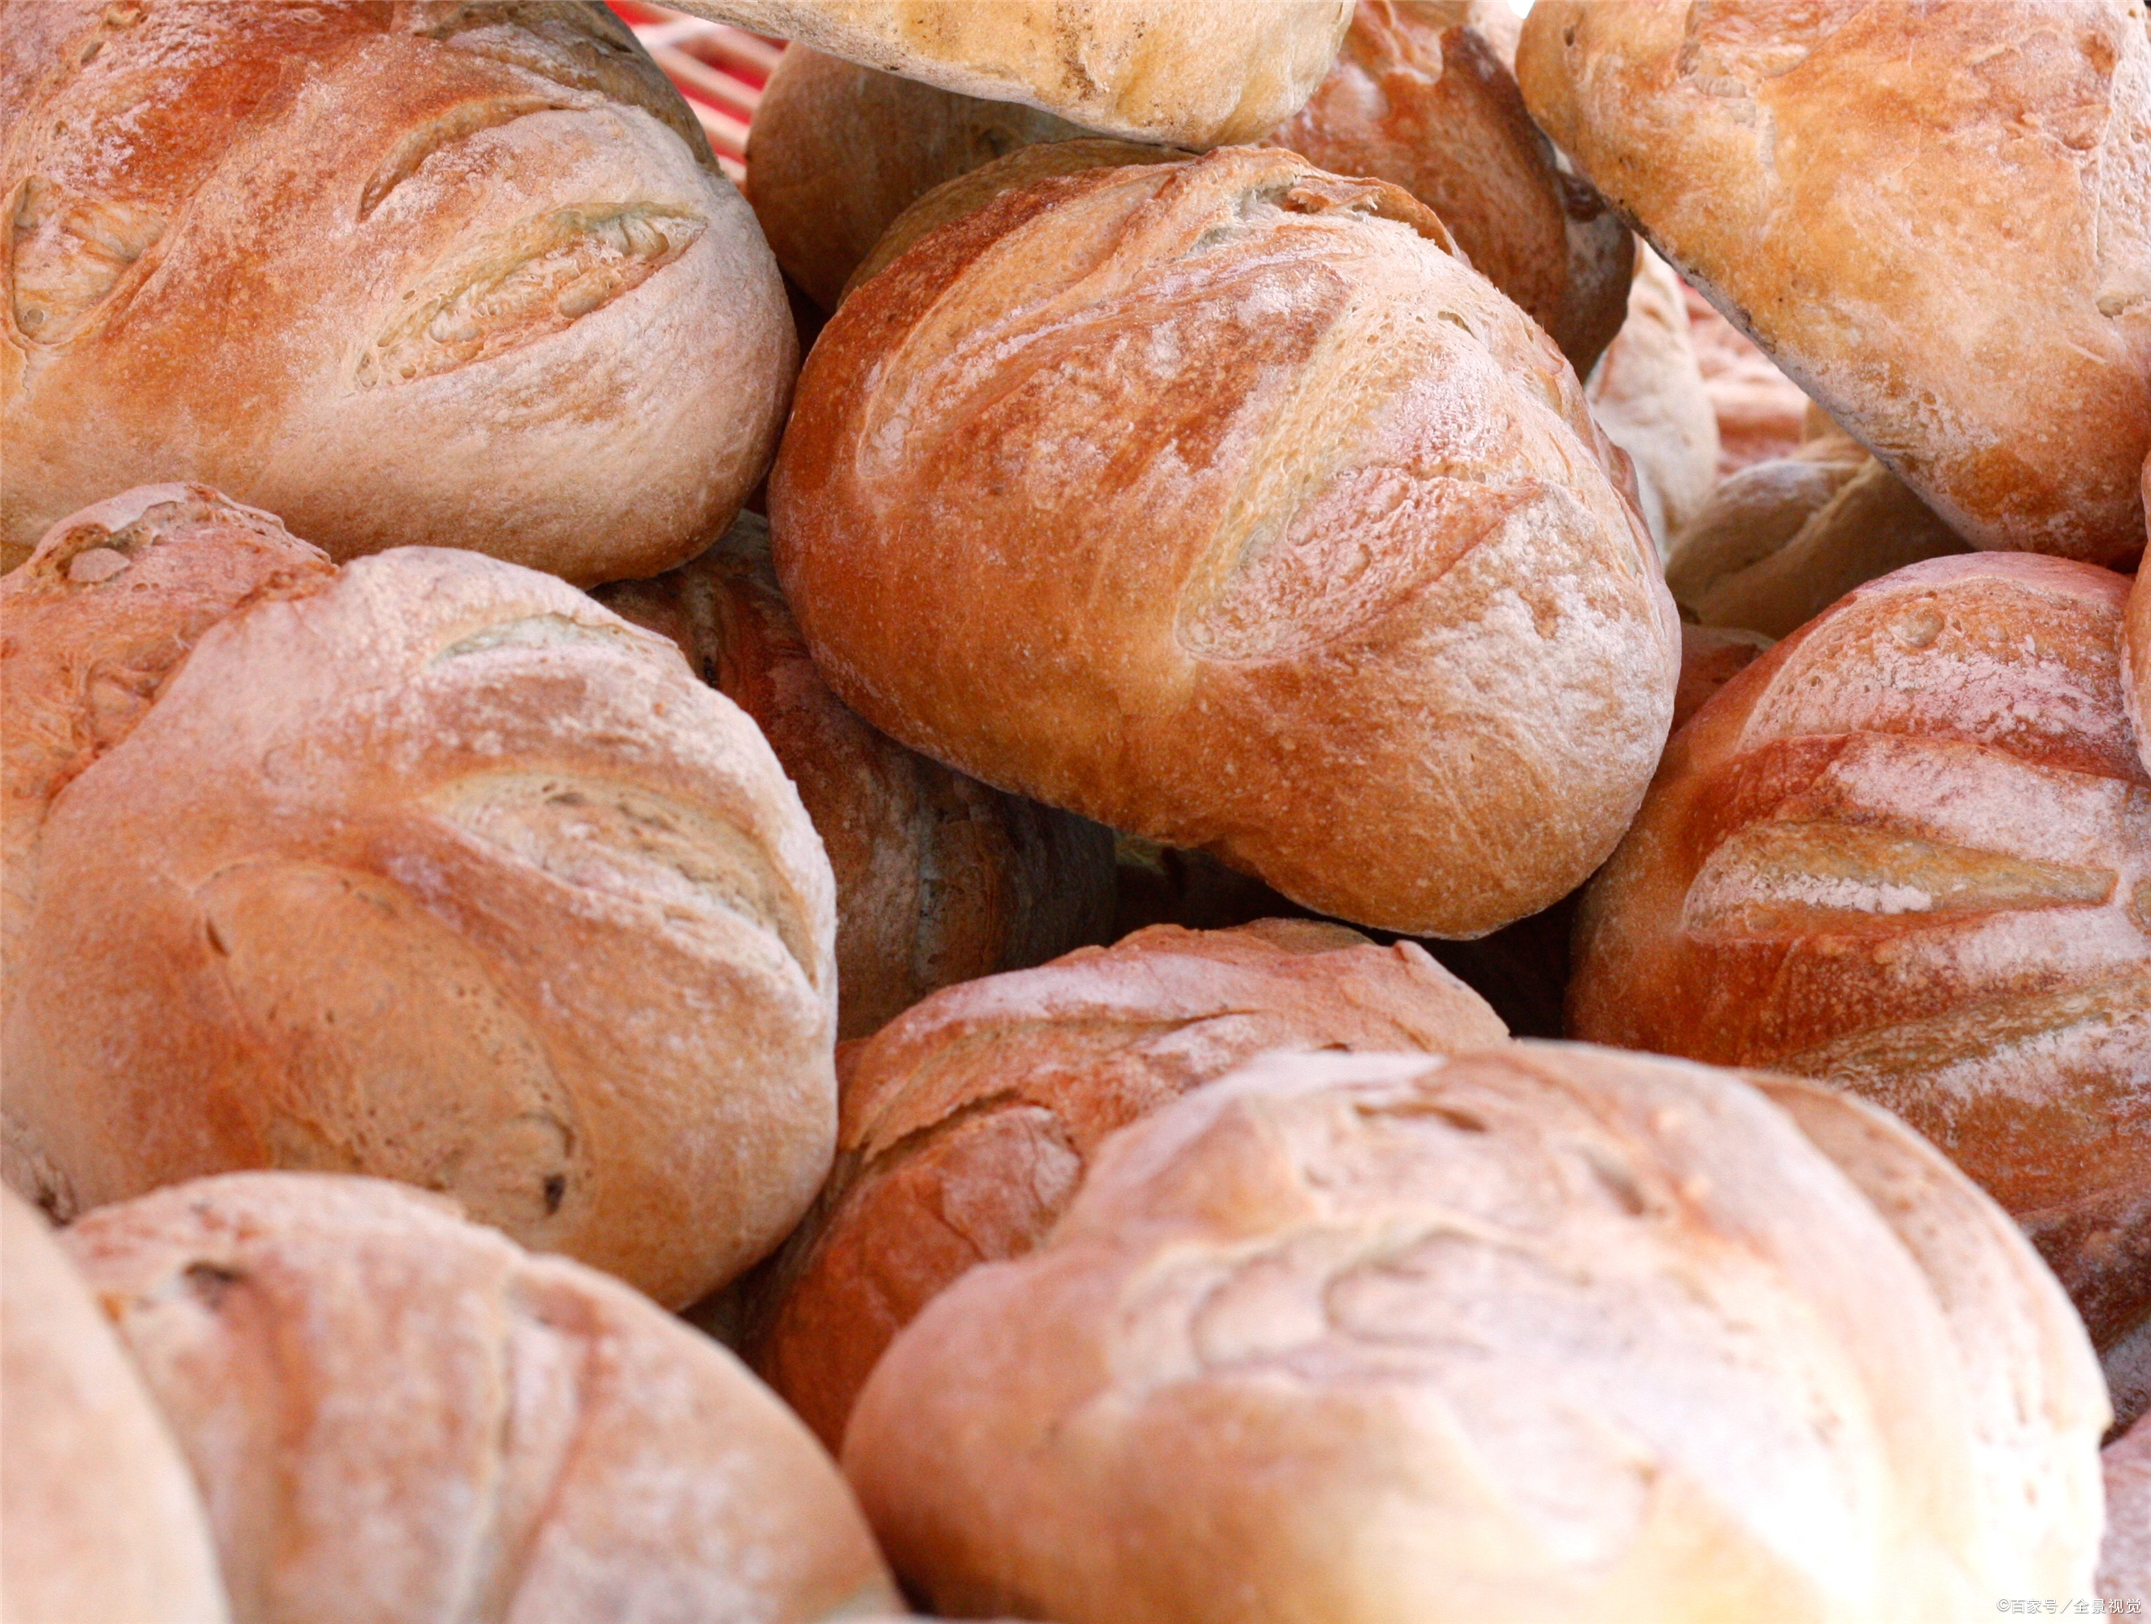 世界面包之旅,浪漫法国,早餐不可或缺的就是面包